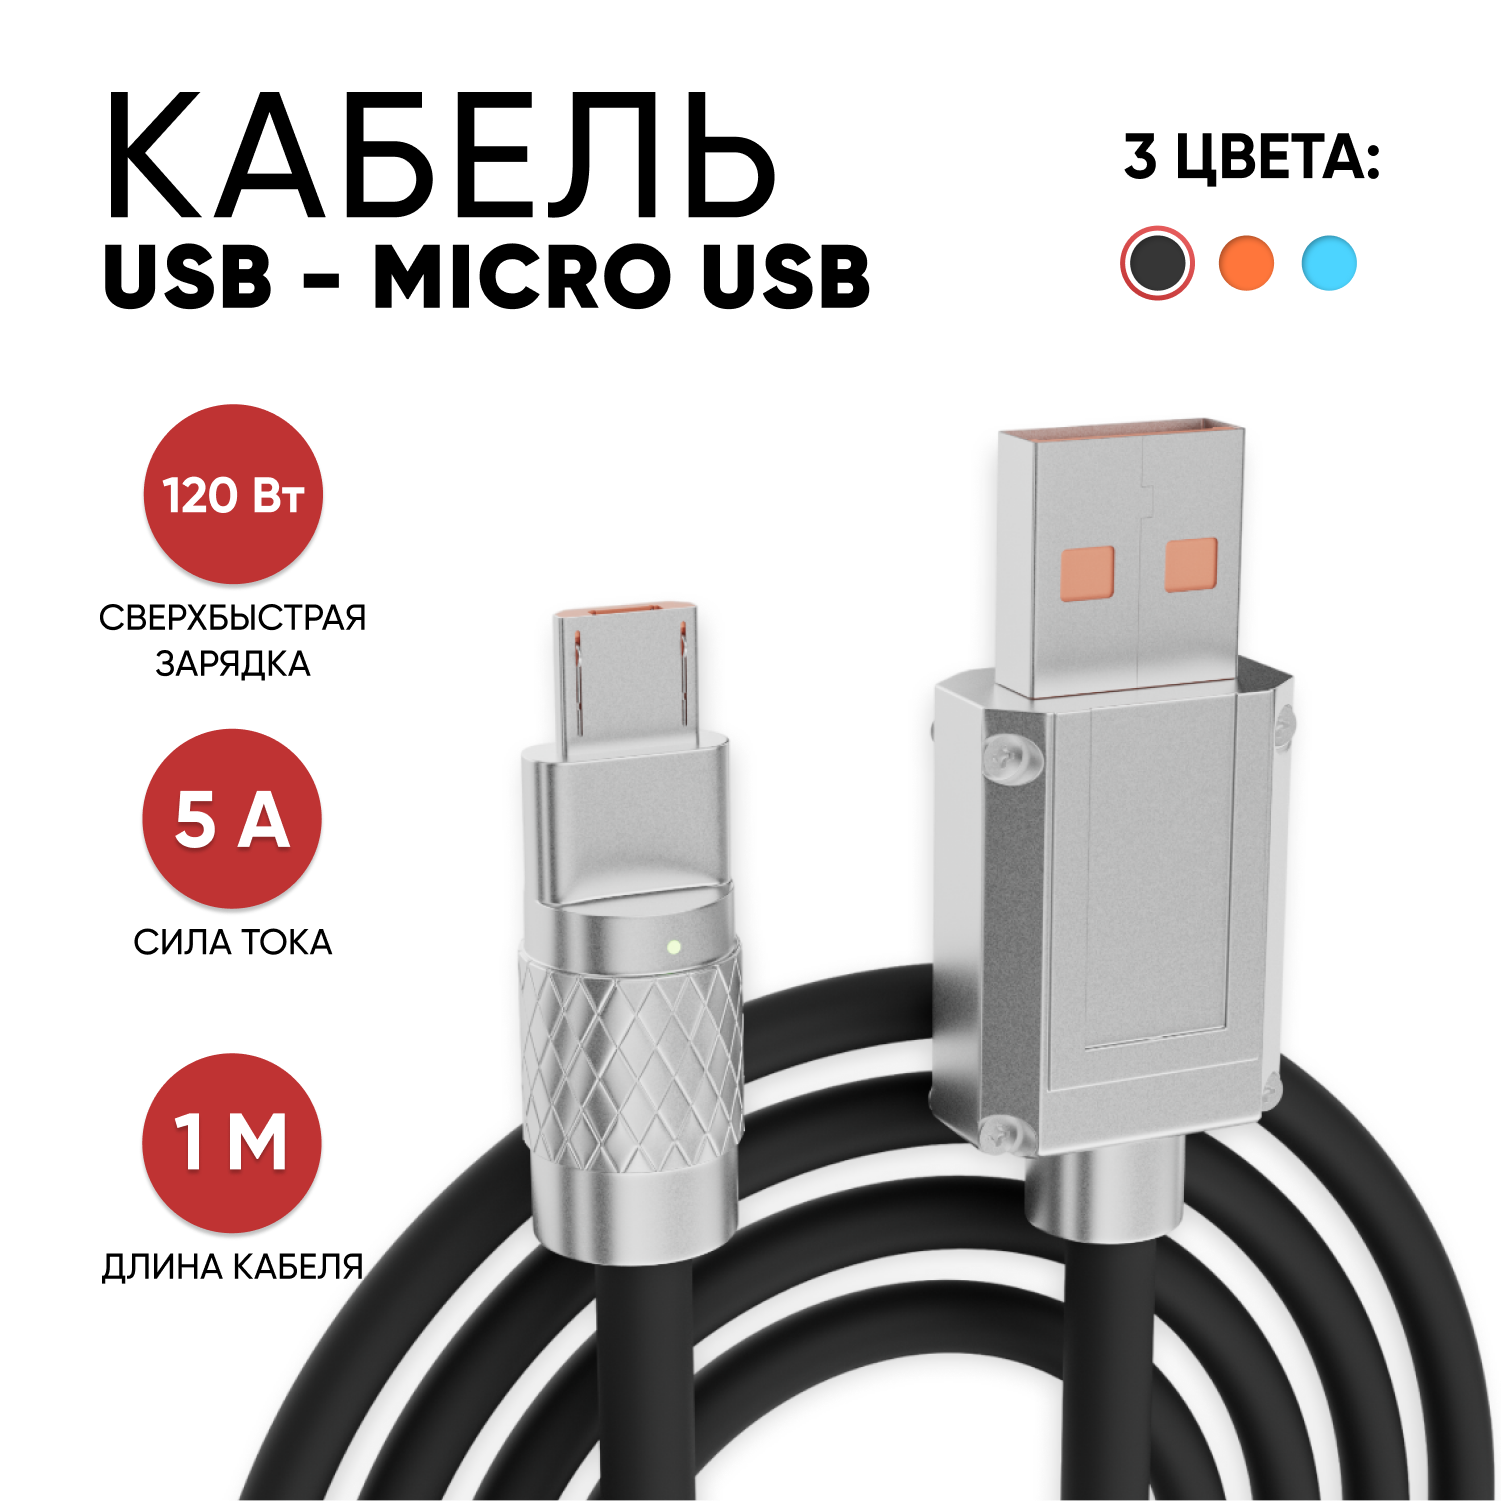 Кабель micro usb, Milliant One, микро юсб кабель, шнур для зарядки телефона, micro usb кабель, шнур micro usb ( черный )